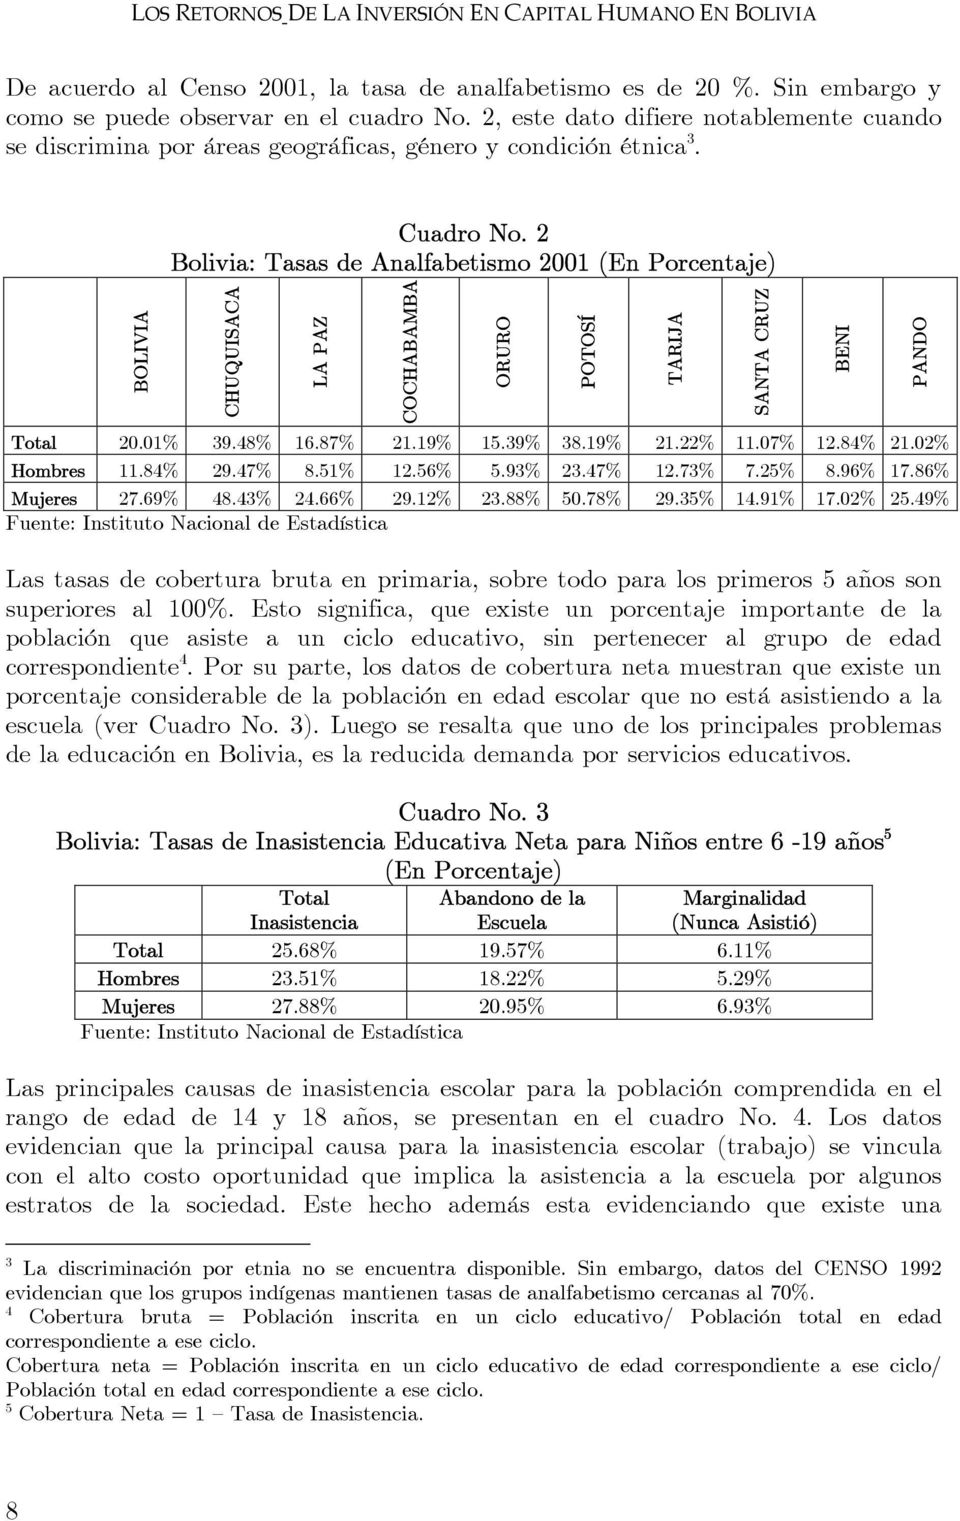 2 Bolivia: Tasas de Analfabetismo 2001 (En Porcentaje) CHUQUISACA LA PAZ COCHABAMBA Total 20.01% 39.48% 16.87% 21.19% 15.39% 38.19% 21.22% 11.07% 12.84% 21.02% Hombres 11.84% 29.47% 8.51% 12.56% 5.